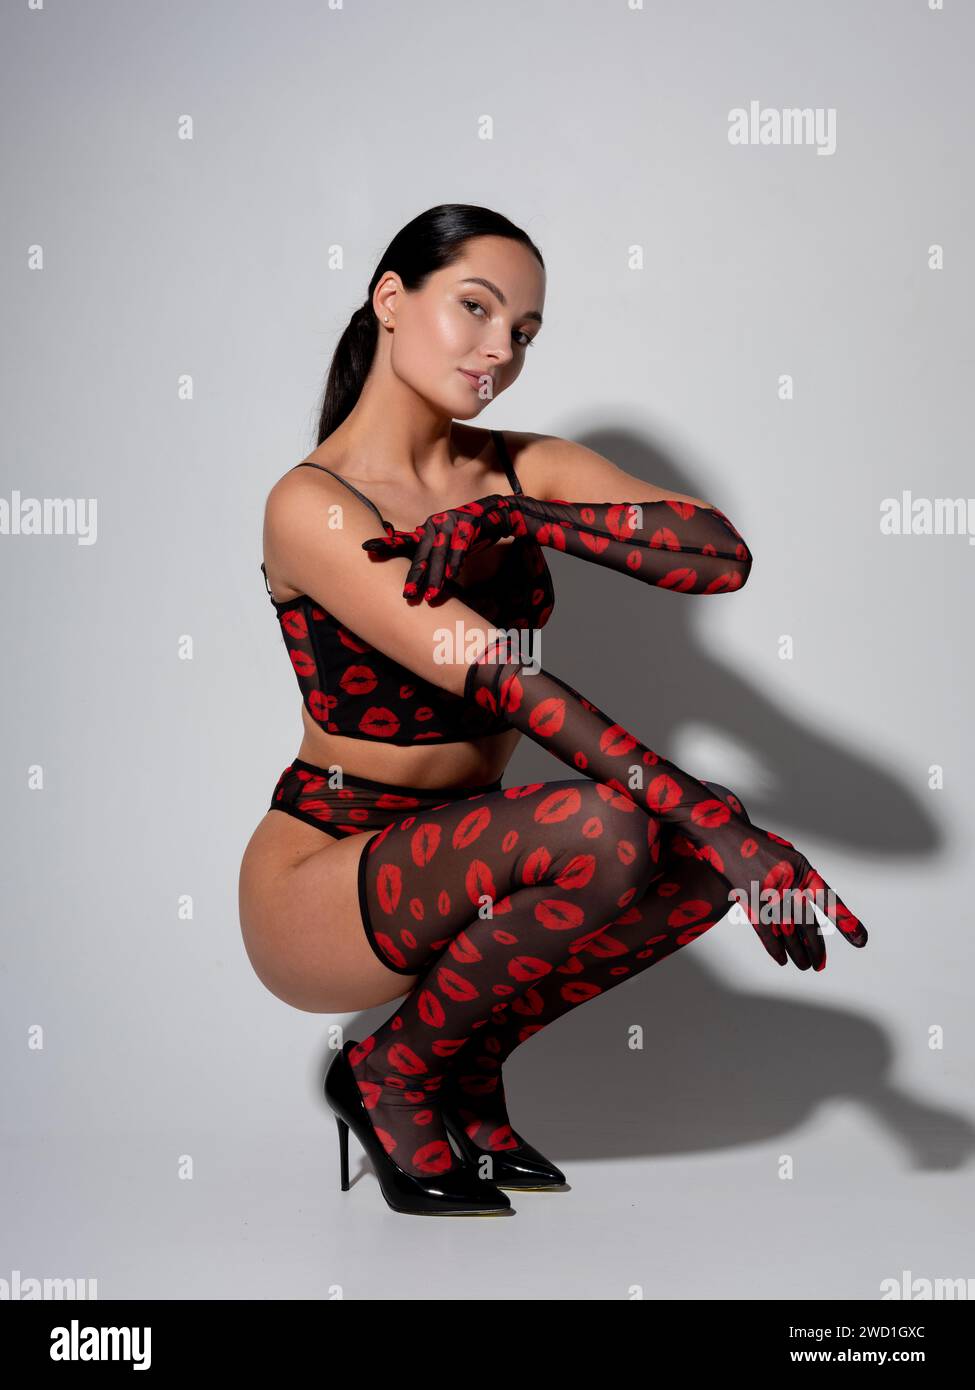 Giovane donna bruna sexy con tacchi alti che posa in lingerie rossa e nera, calze lunghe e guanti con motivo labbra contro le pareti grigie e lui Foto Stock